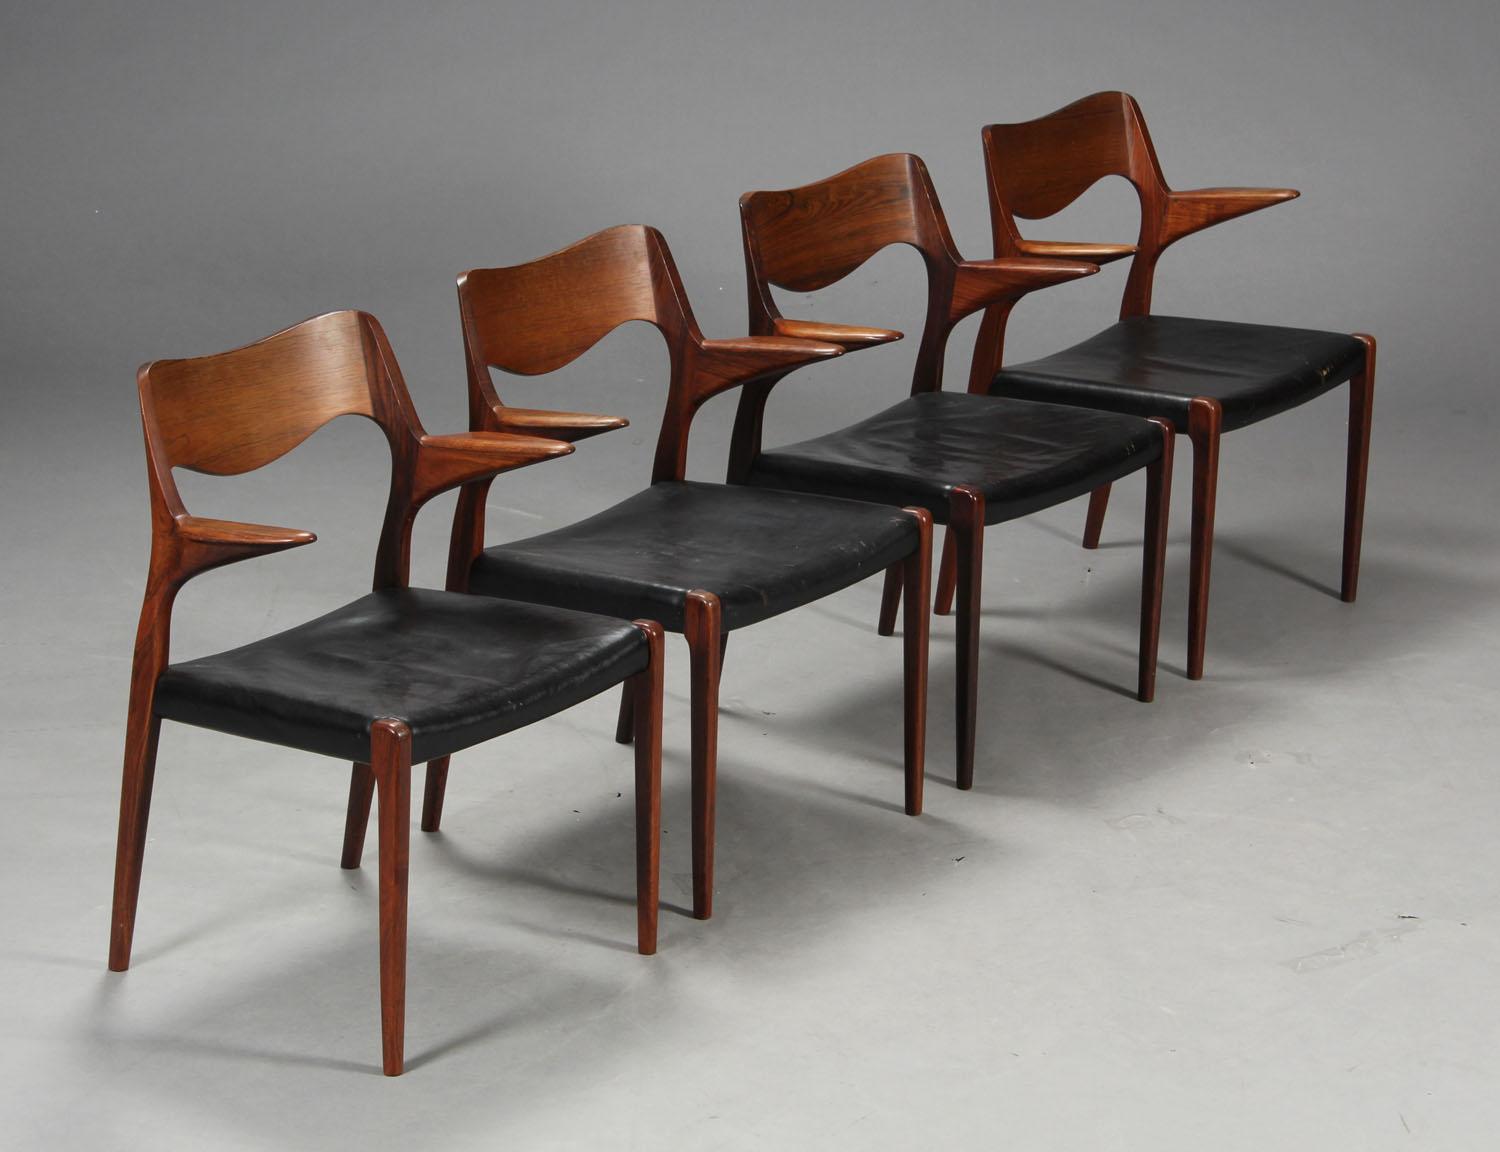 Abgebildet ist ein Satz von vier Esszimmerstühlen mit Armlehnen, die 1951 von Niels Otto Moller entworfen und vor 1969 von JL Moller hergestellt wurden, wie das runde Label auf der Scheibe zeigt. Original schwarzes Leder ist in gutem Zustand mit